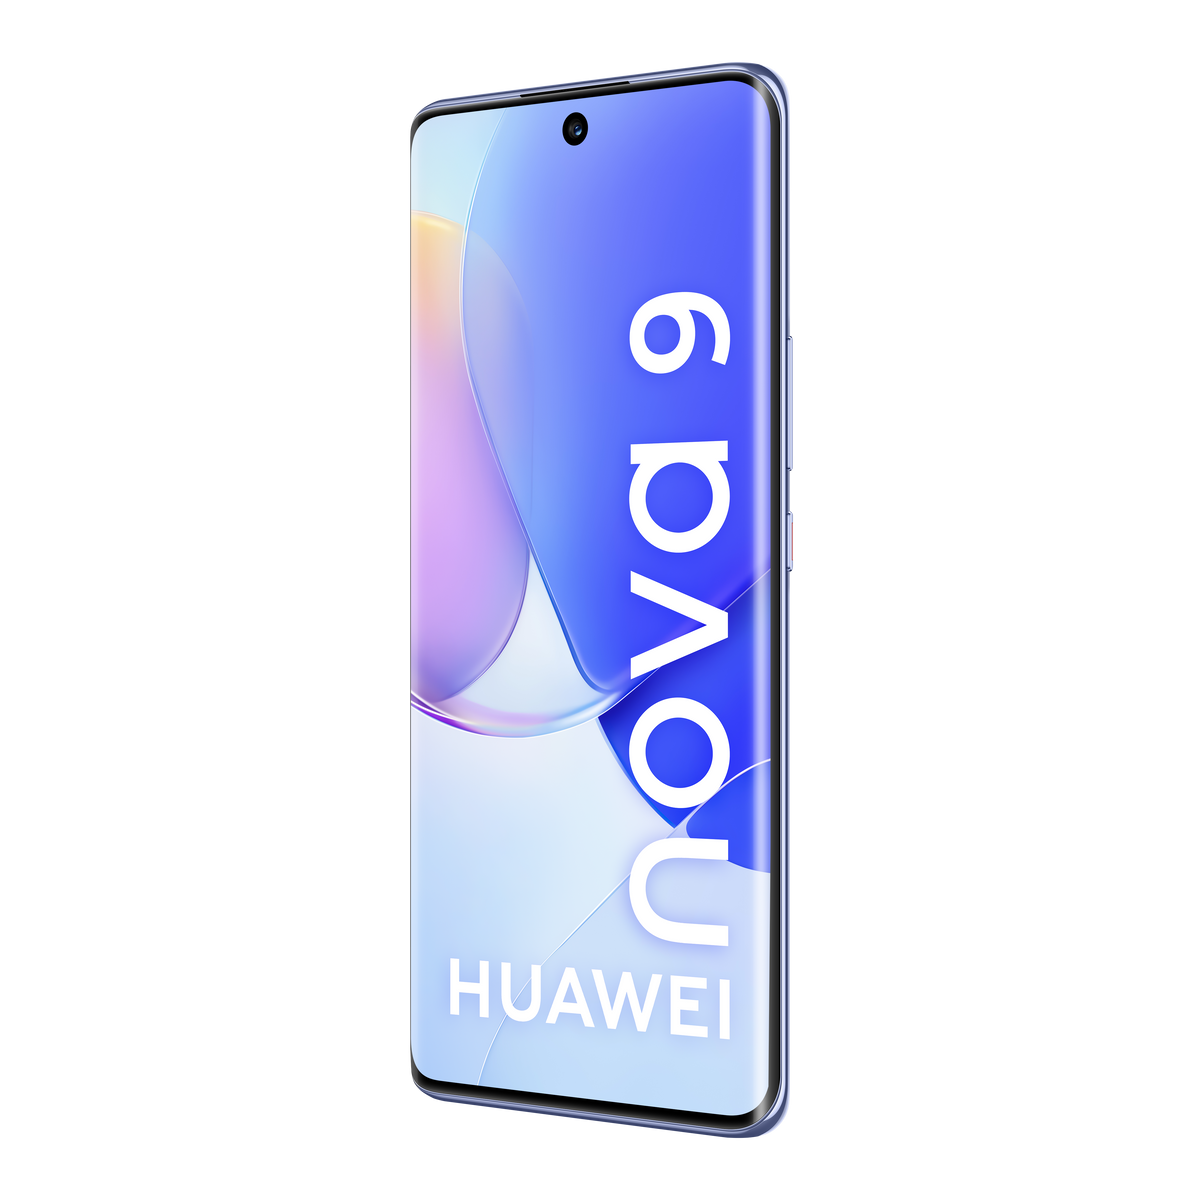 128 starry blue 128 Blau DS HUAWEI SIM GB 9 Nova Dual